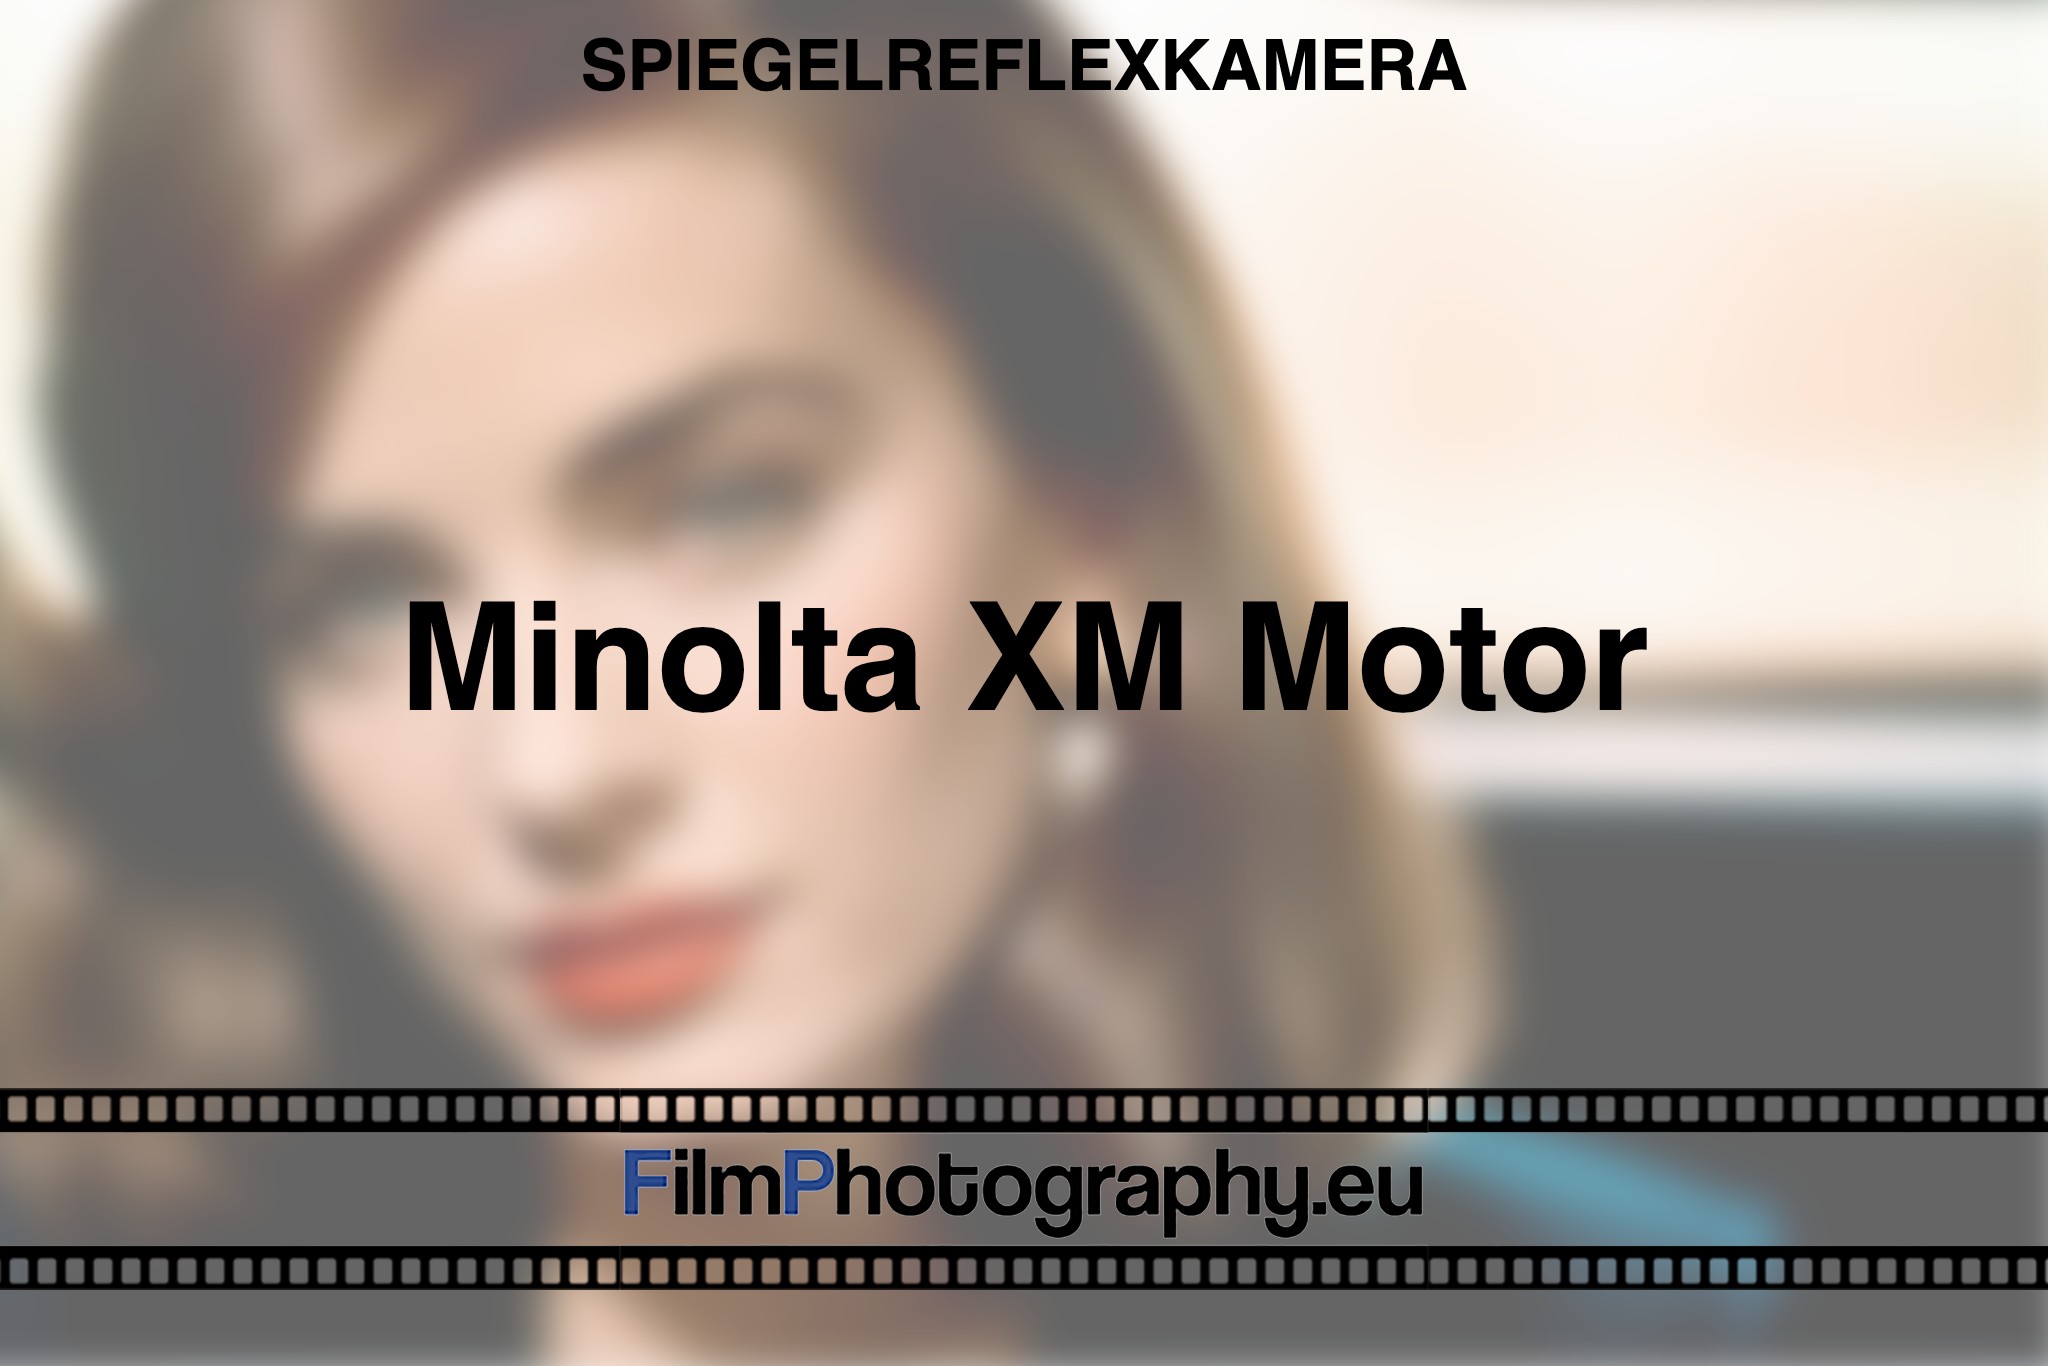 minolta-xm-motor-spiegelreflexkamera-bnv